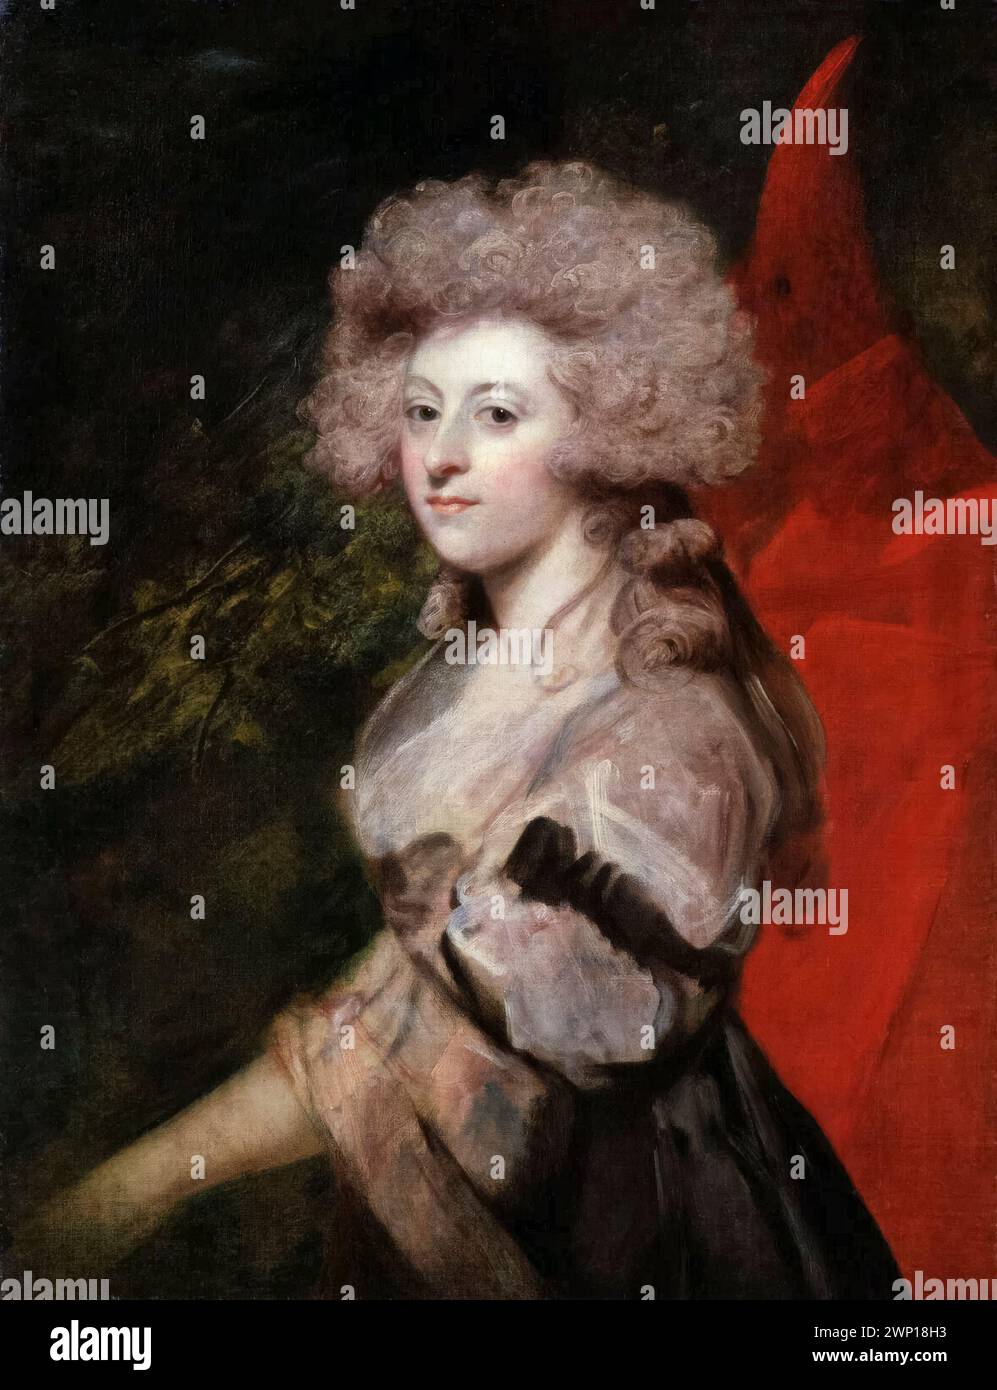 Maria Anne Fitzherbert (née Smythe, anciennement Weld, 1756-1837), maîtresse de George IV du Royaume-Uni, portrait peint à l'huile sur toile par Sir Joshua Reynolds, vers 1788 Banque D'Images